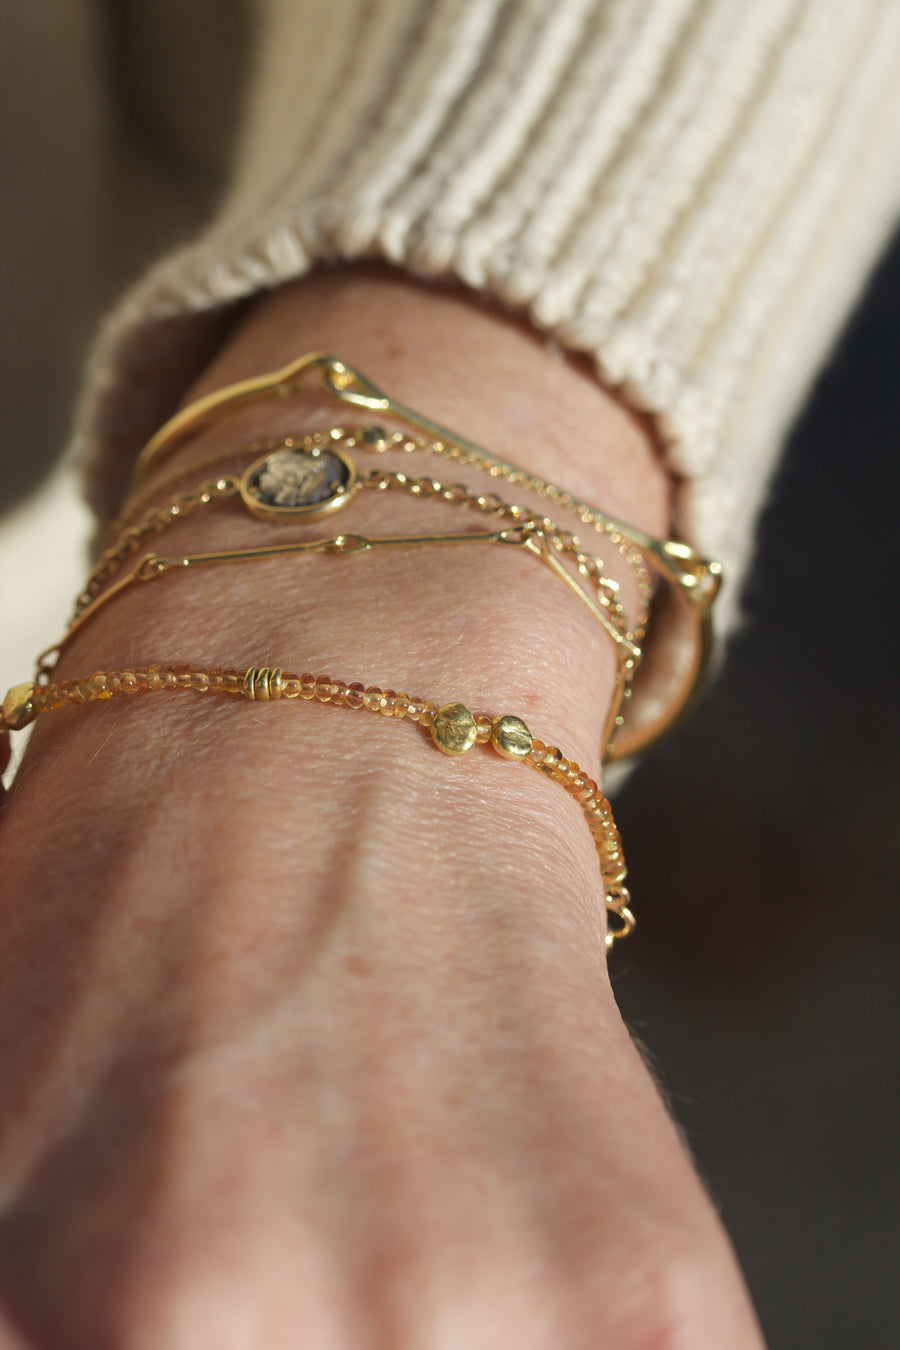 Golden Sapphire & High Karat Gold Beaded Bracelet